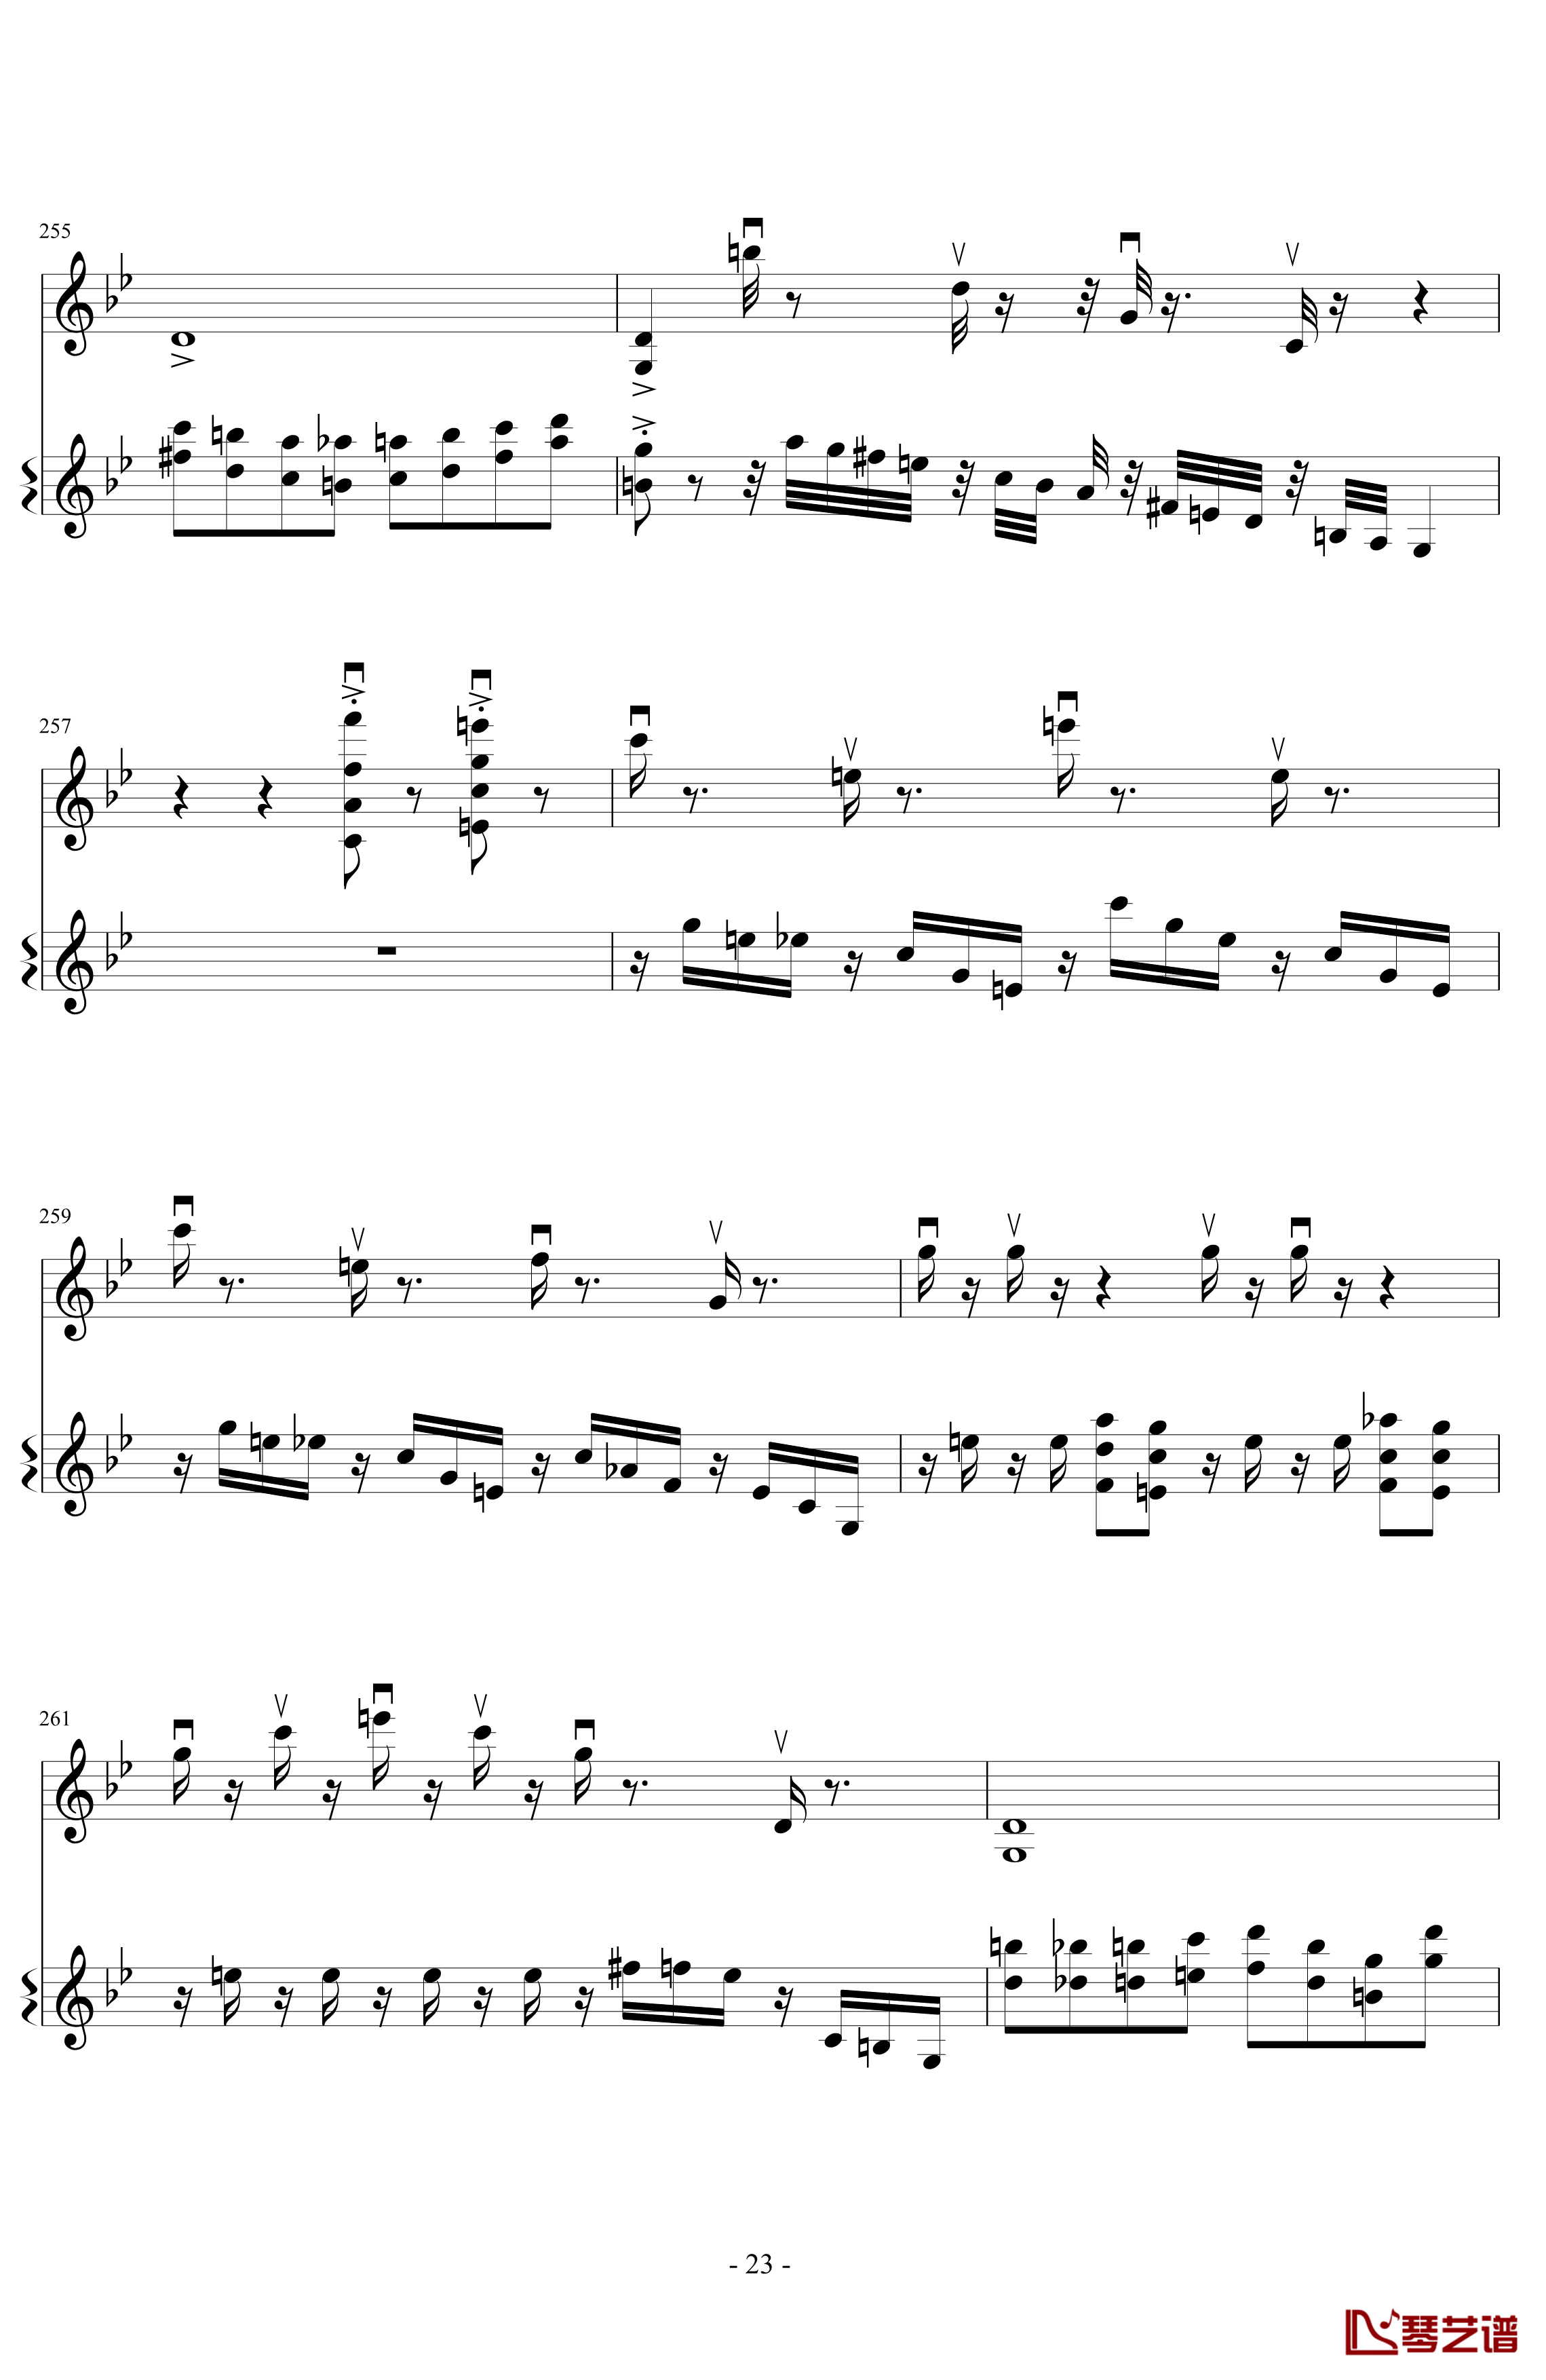 意大利国歌变奏曲钢琴谱-DXF23